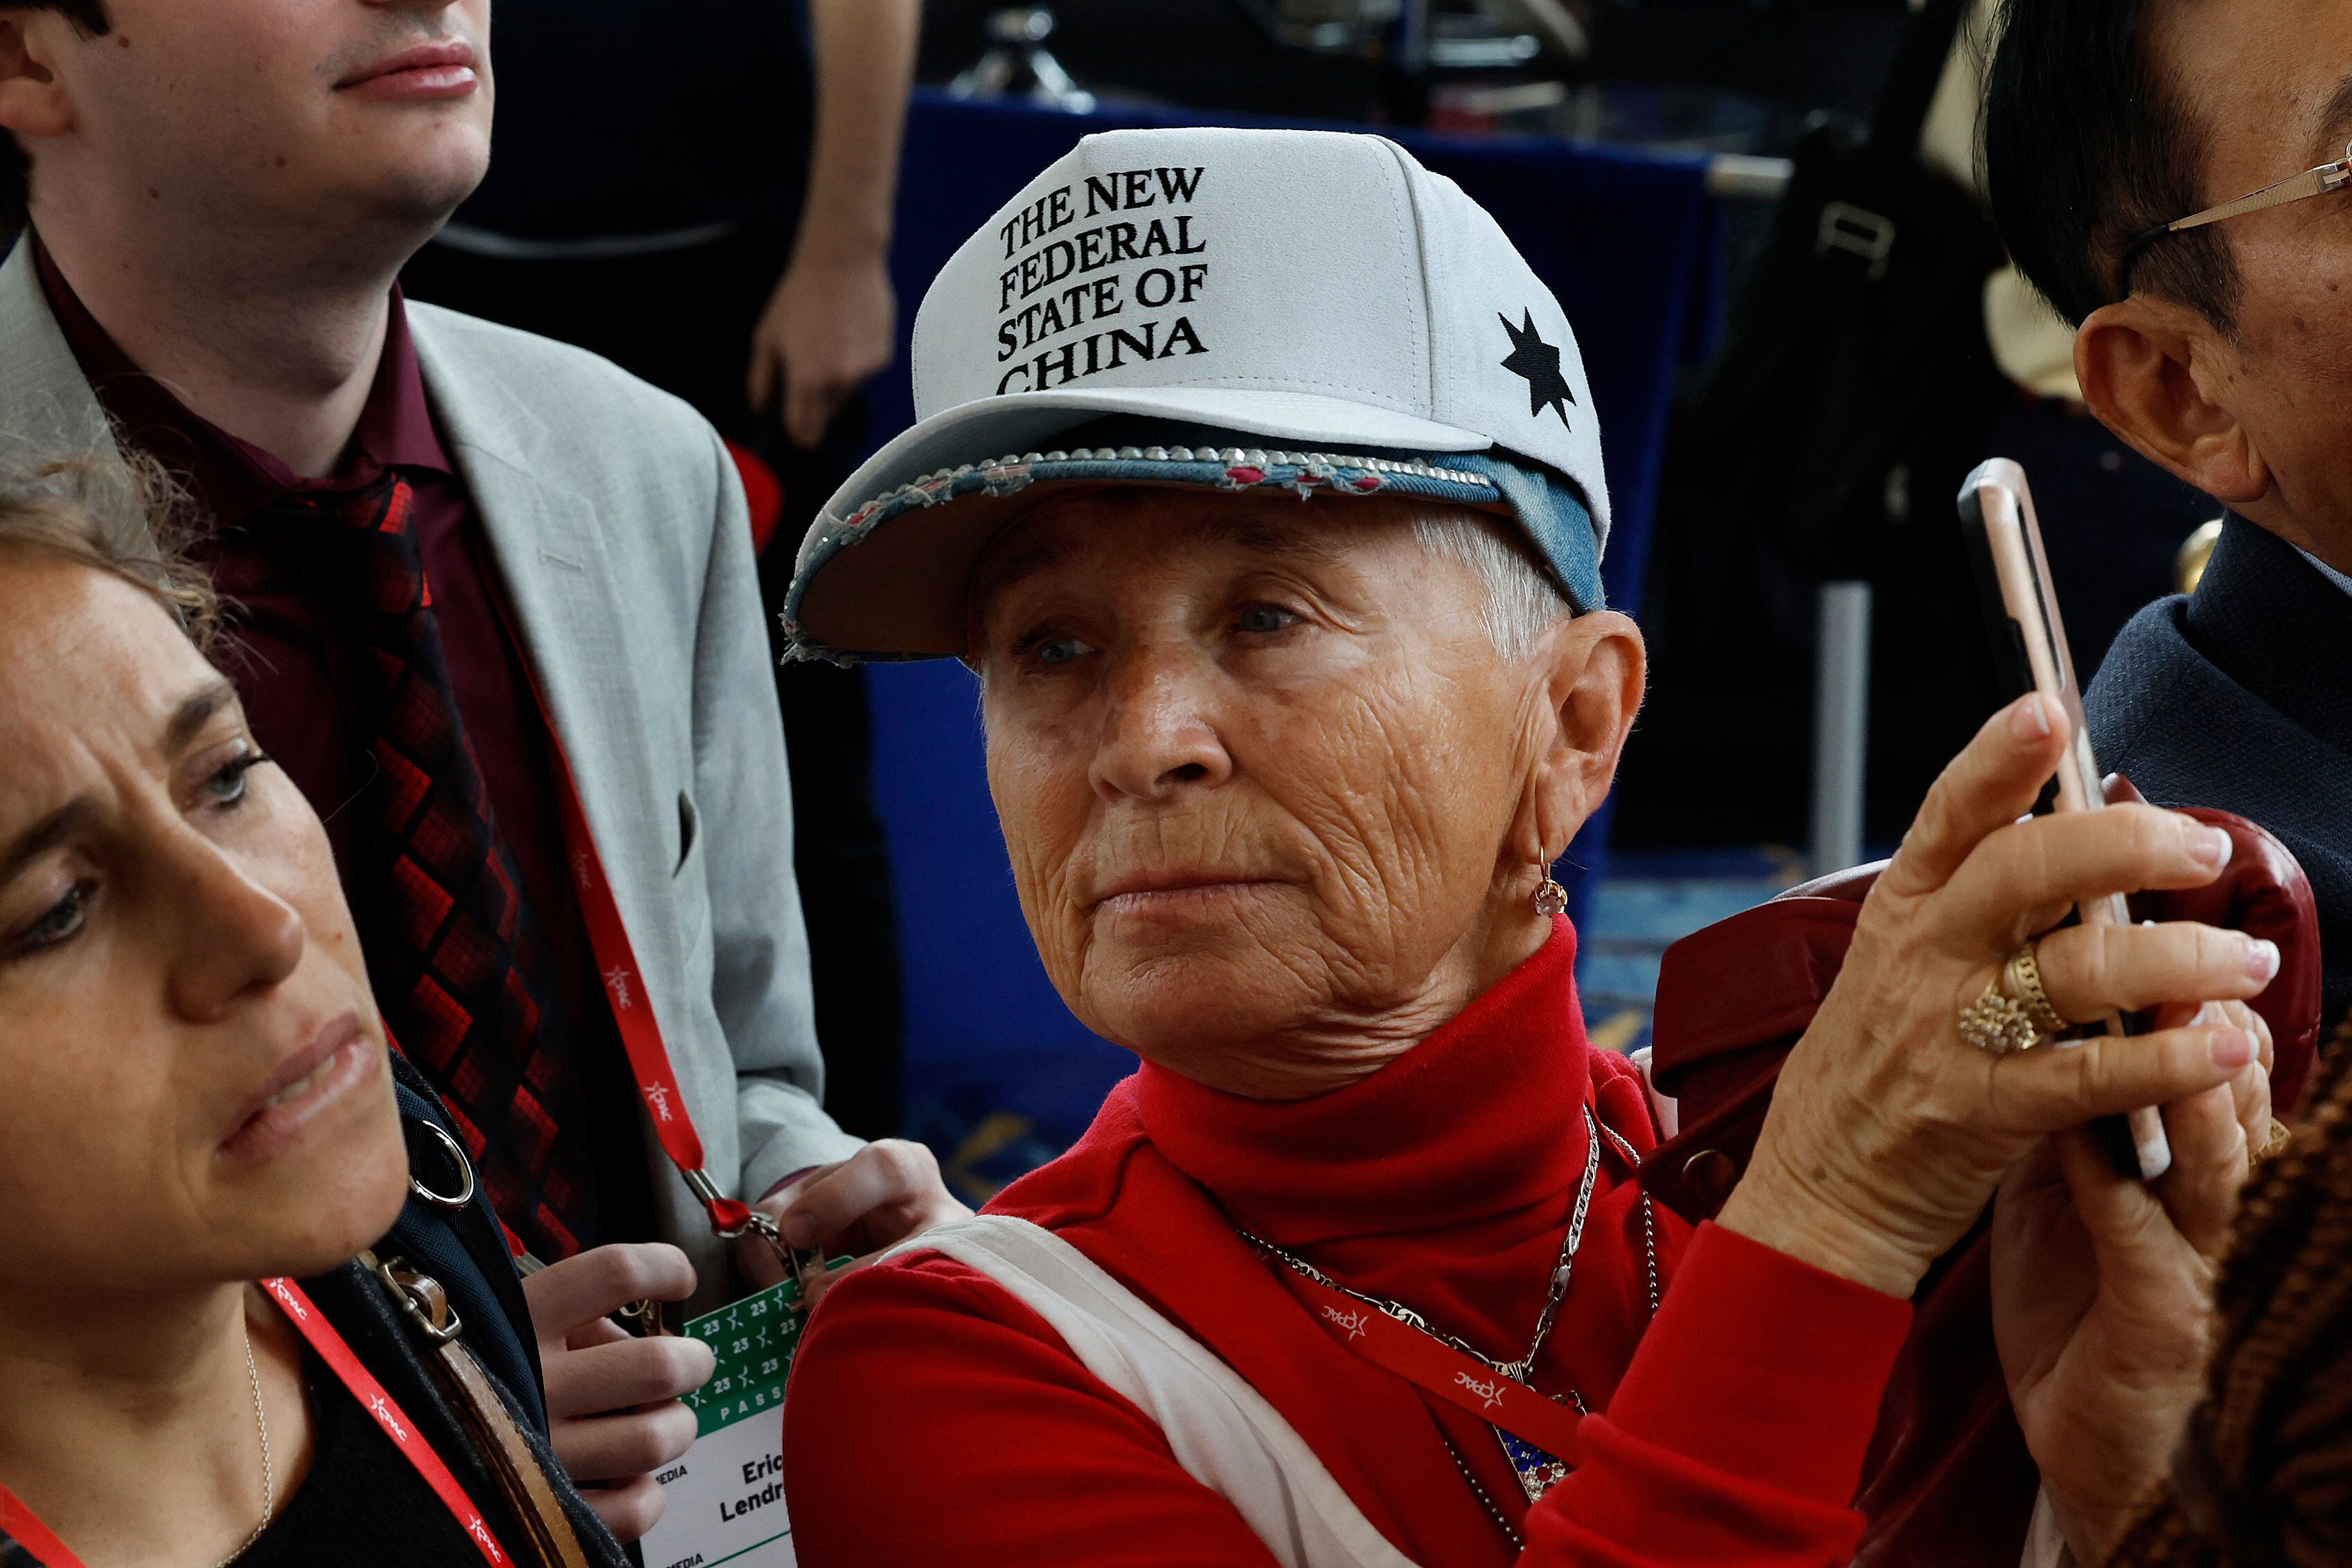 Una mujer este jueves en la CPAC lleva una gorra que alude a la idea de China como otro Estado de la federación americana.